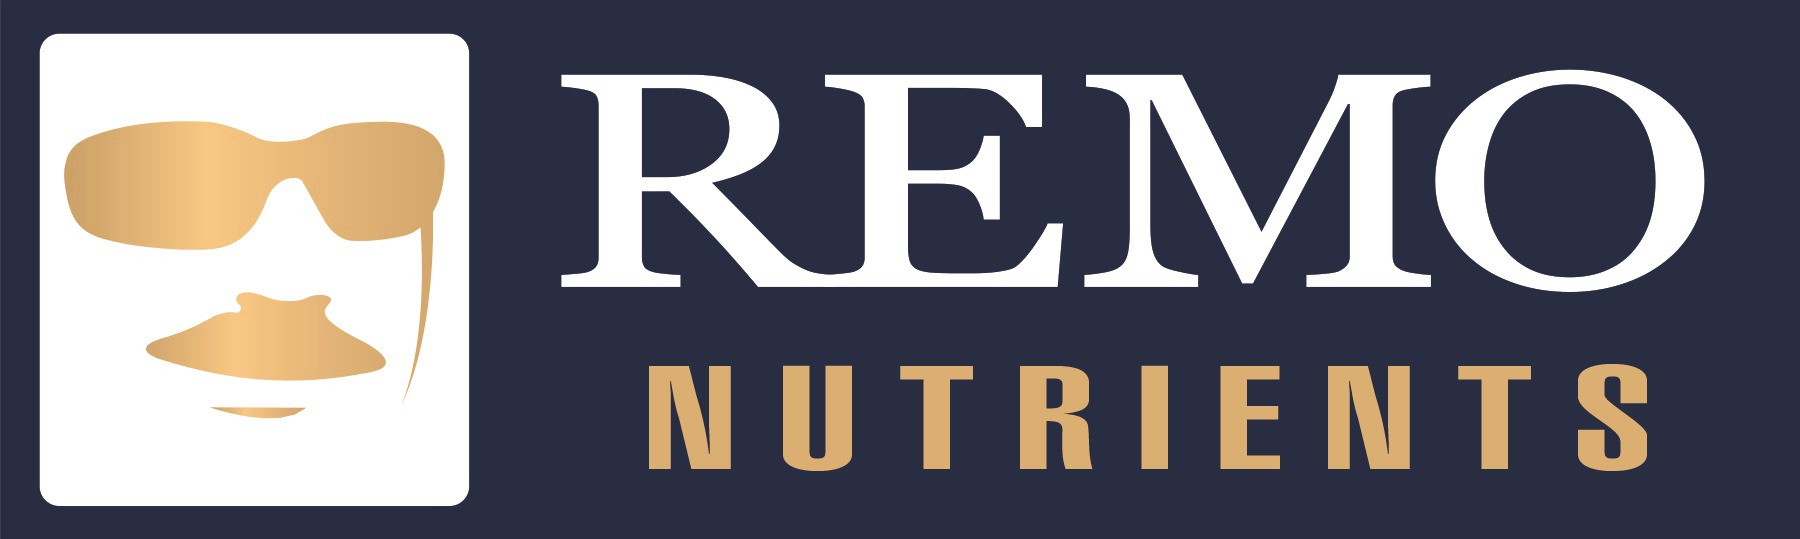 Nutrient Logo - Remo Nutrients | The Grow Shop Ltd.